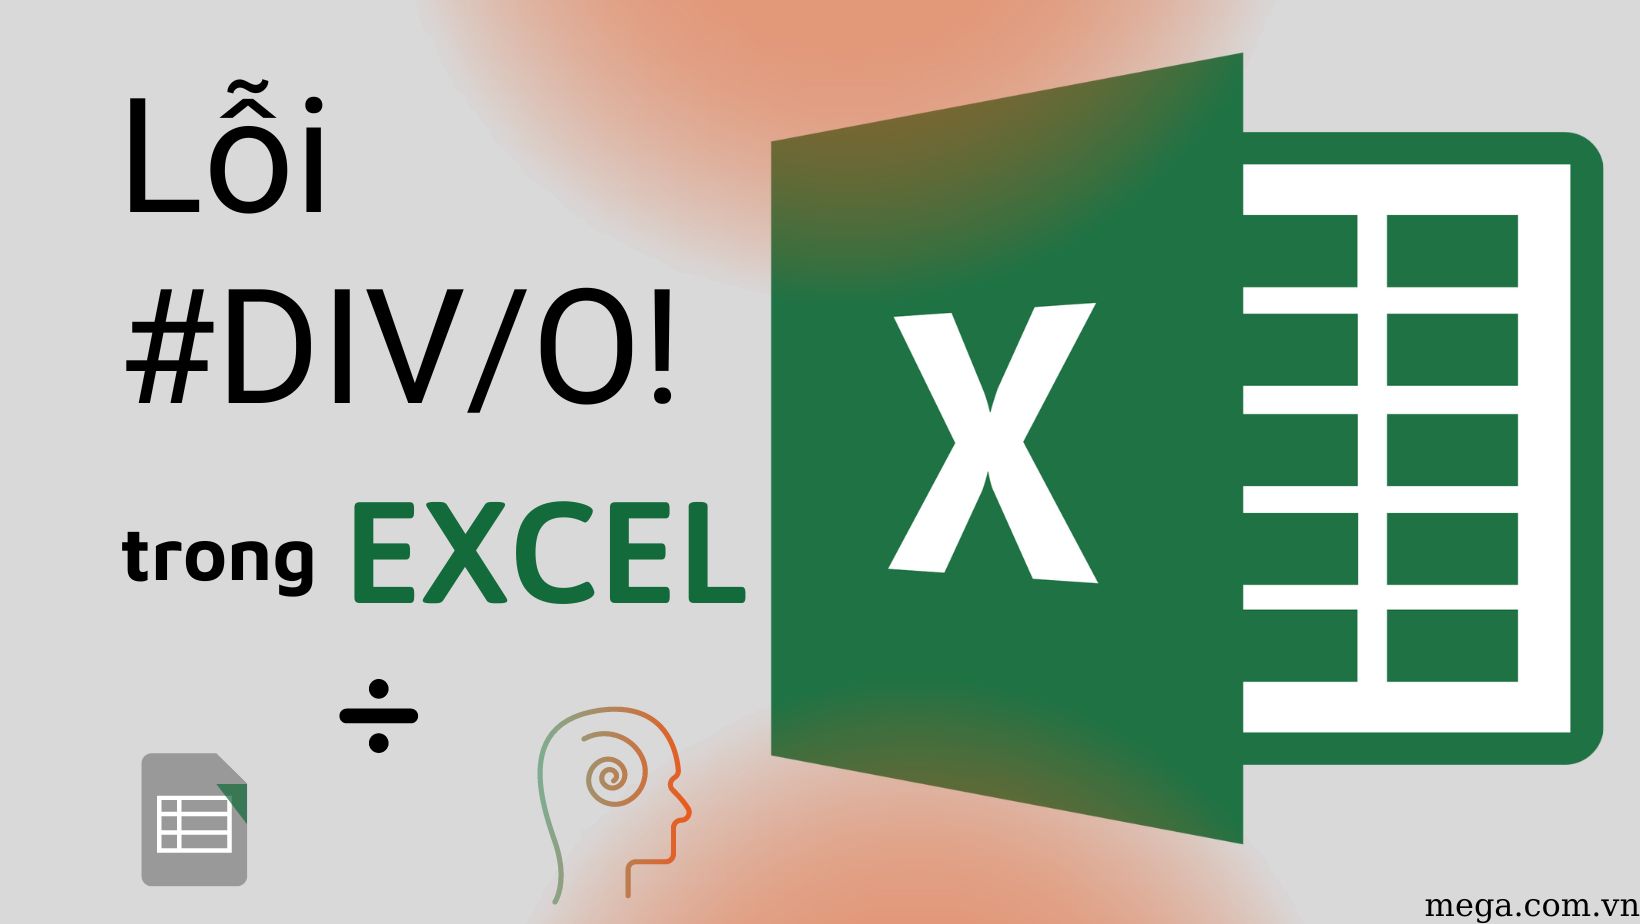 Có cách nào để tránh lỗi #DIV/0! khi thực hiện tính toán trong Excel không?
